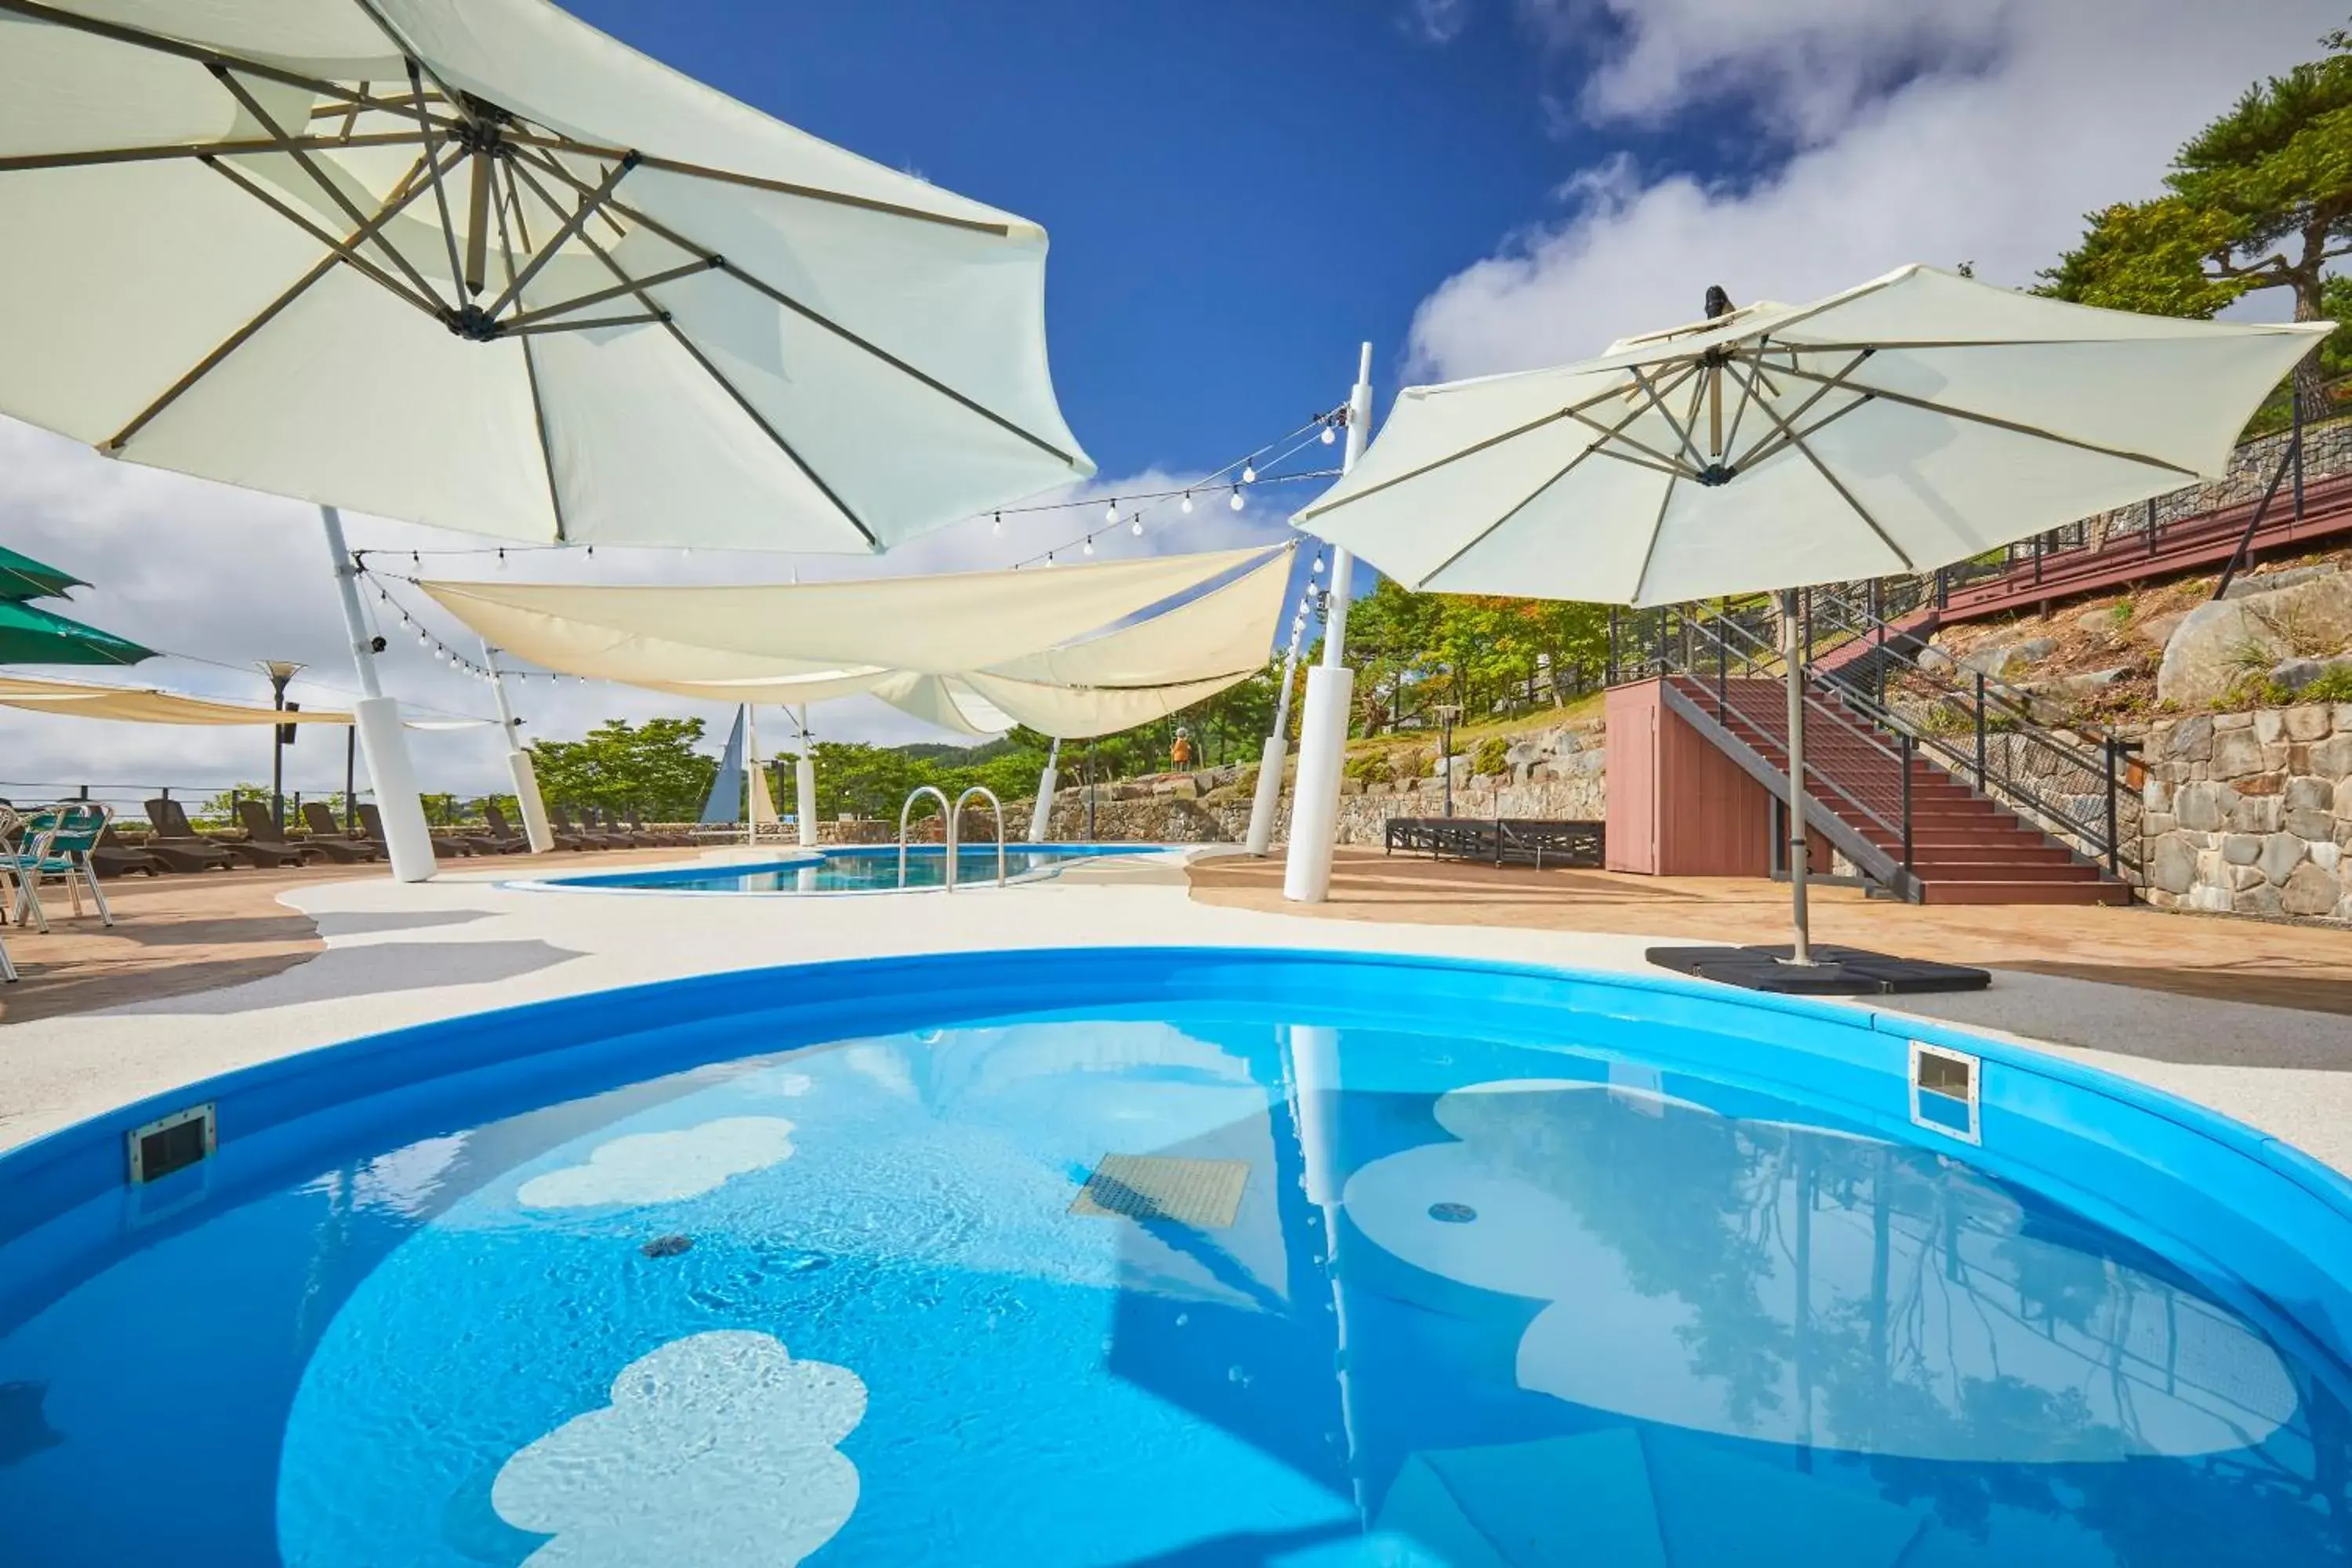 Swimming pool in Mauna Ocean Resort